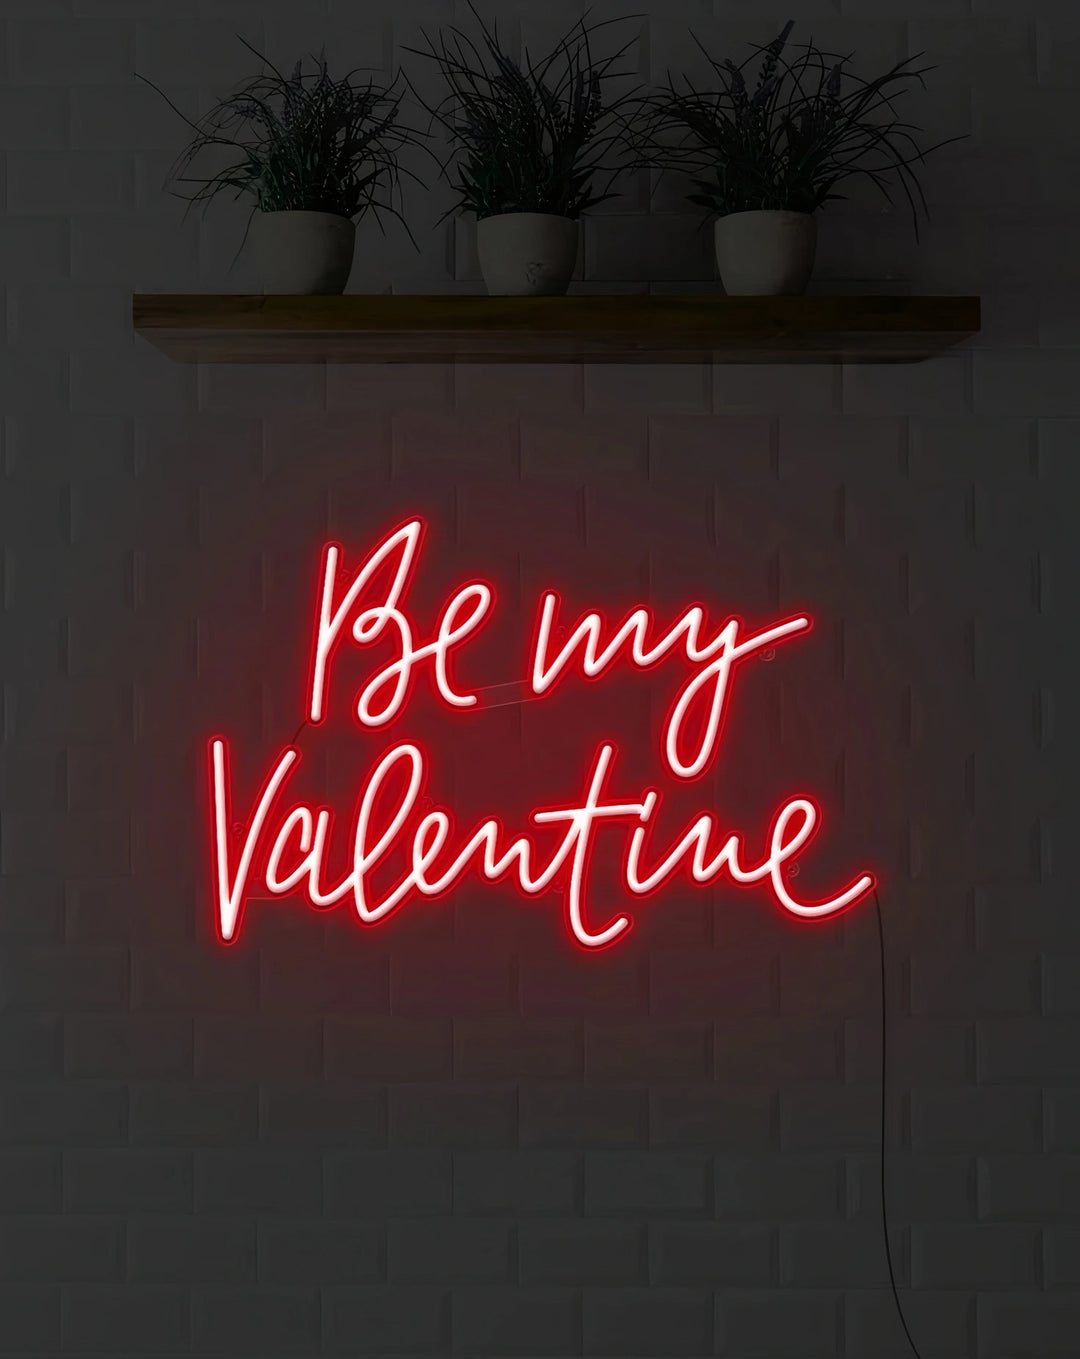 Love Illuminated - Be My Valentine Neon Affection-ManhattanNeons